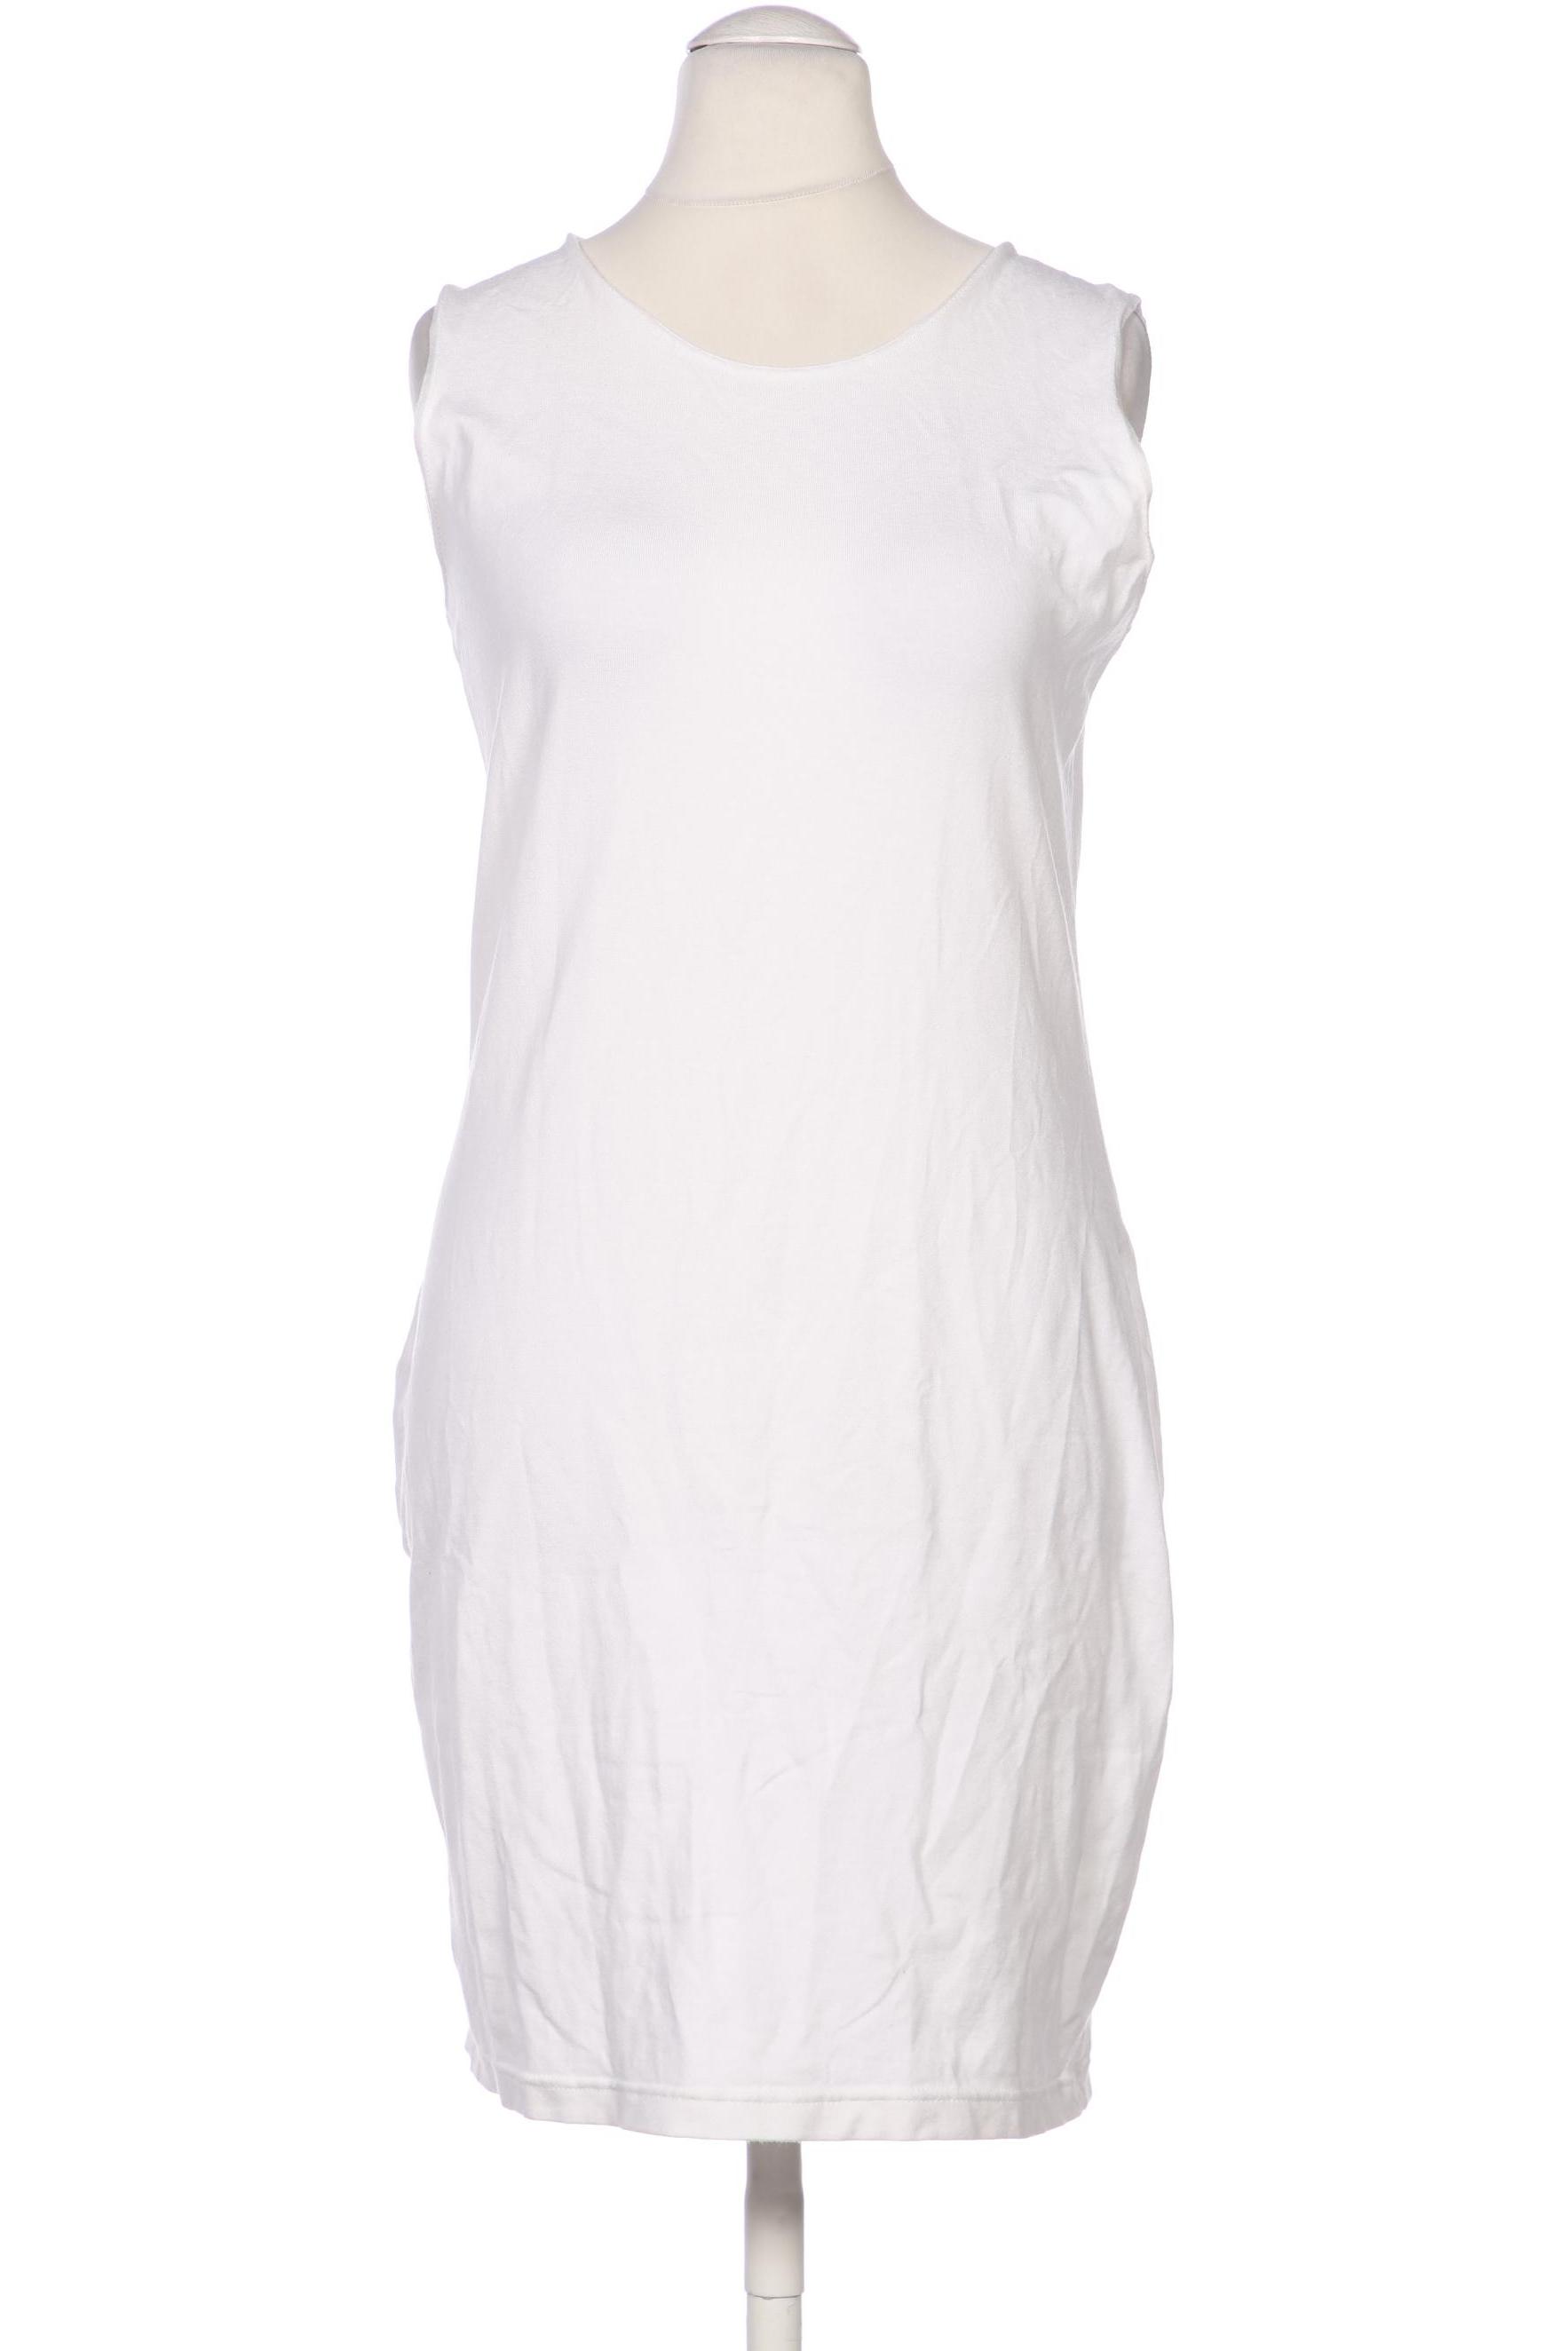 Riani Damen Kleid, weiß, Gr. 38 von RIANI